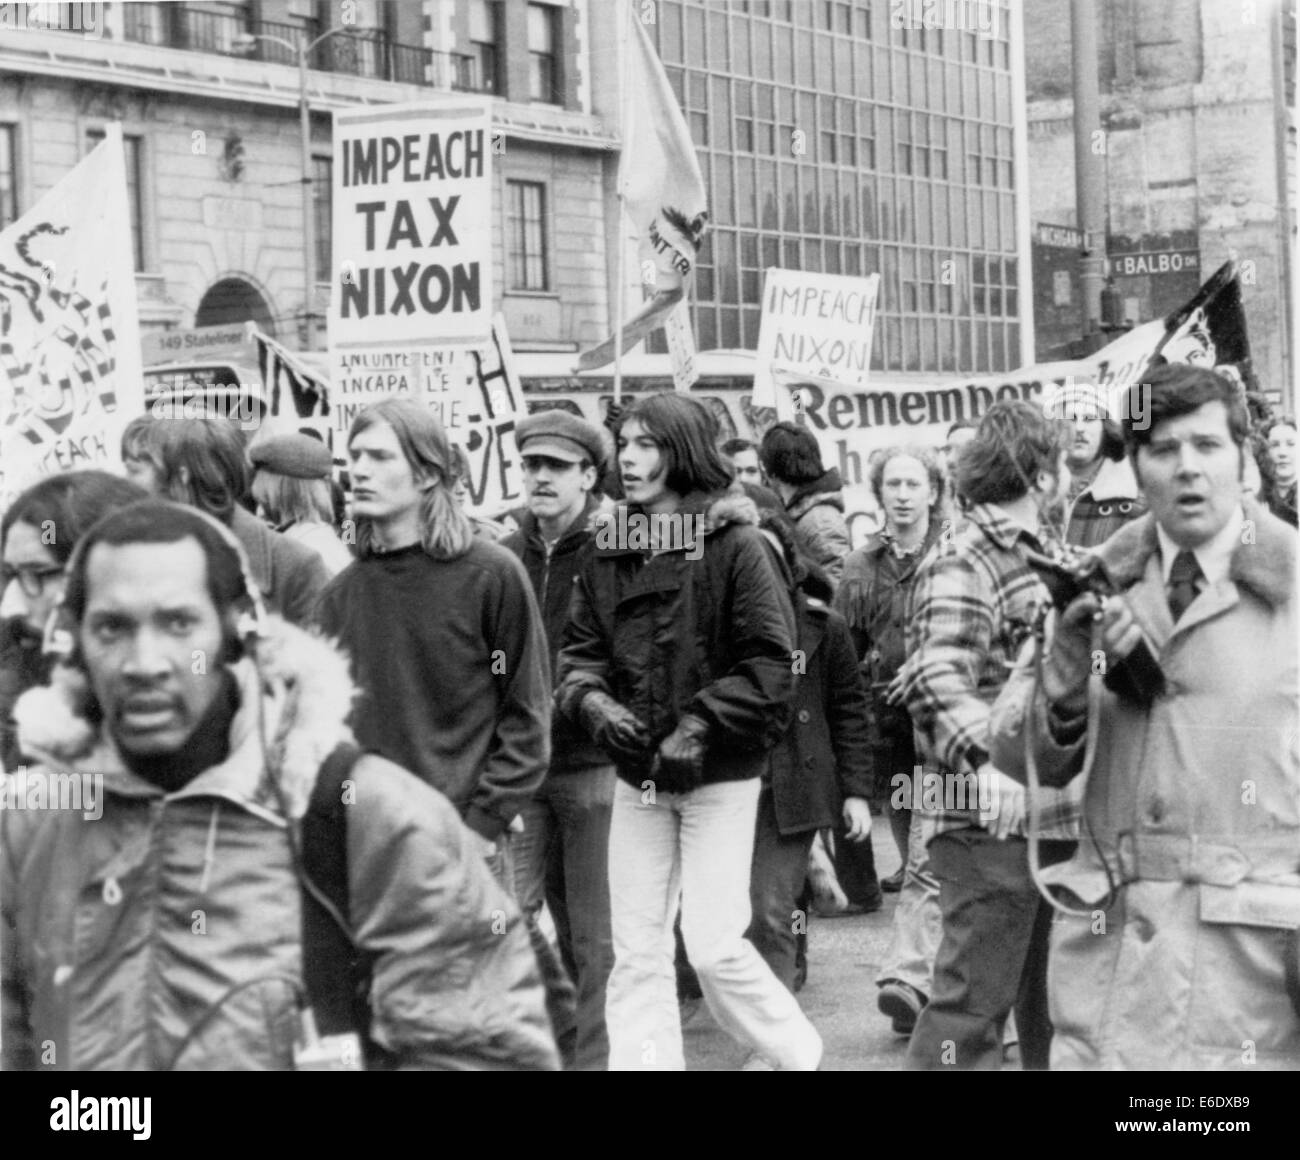 Protesters Outside Hilton Hotel Where President Richard Nixon was Speaking, Chicago, Illinois, USA, 1974 Stock Photo